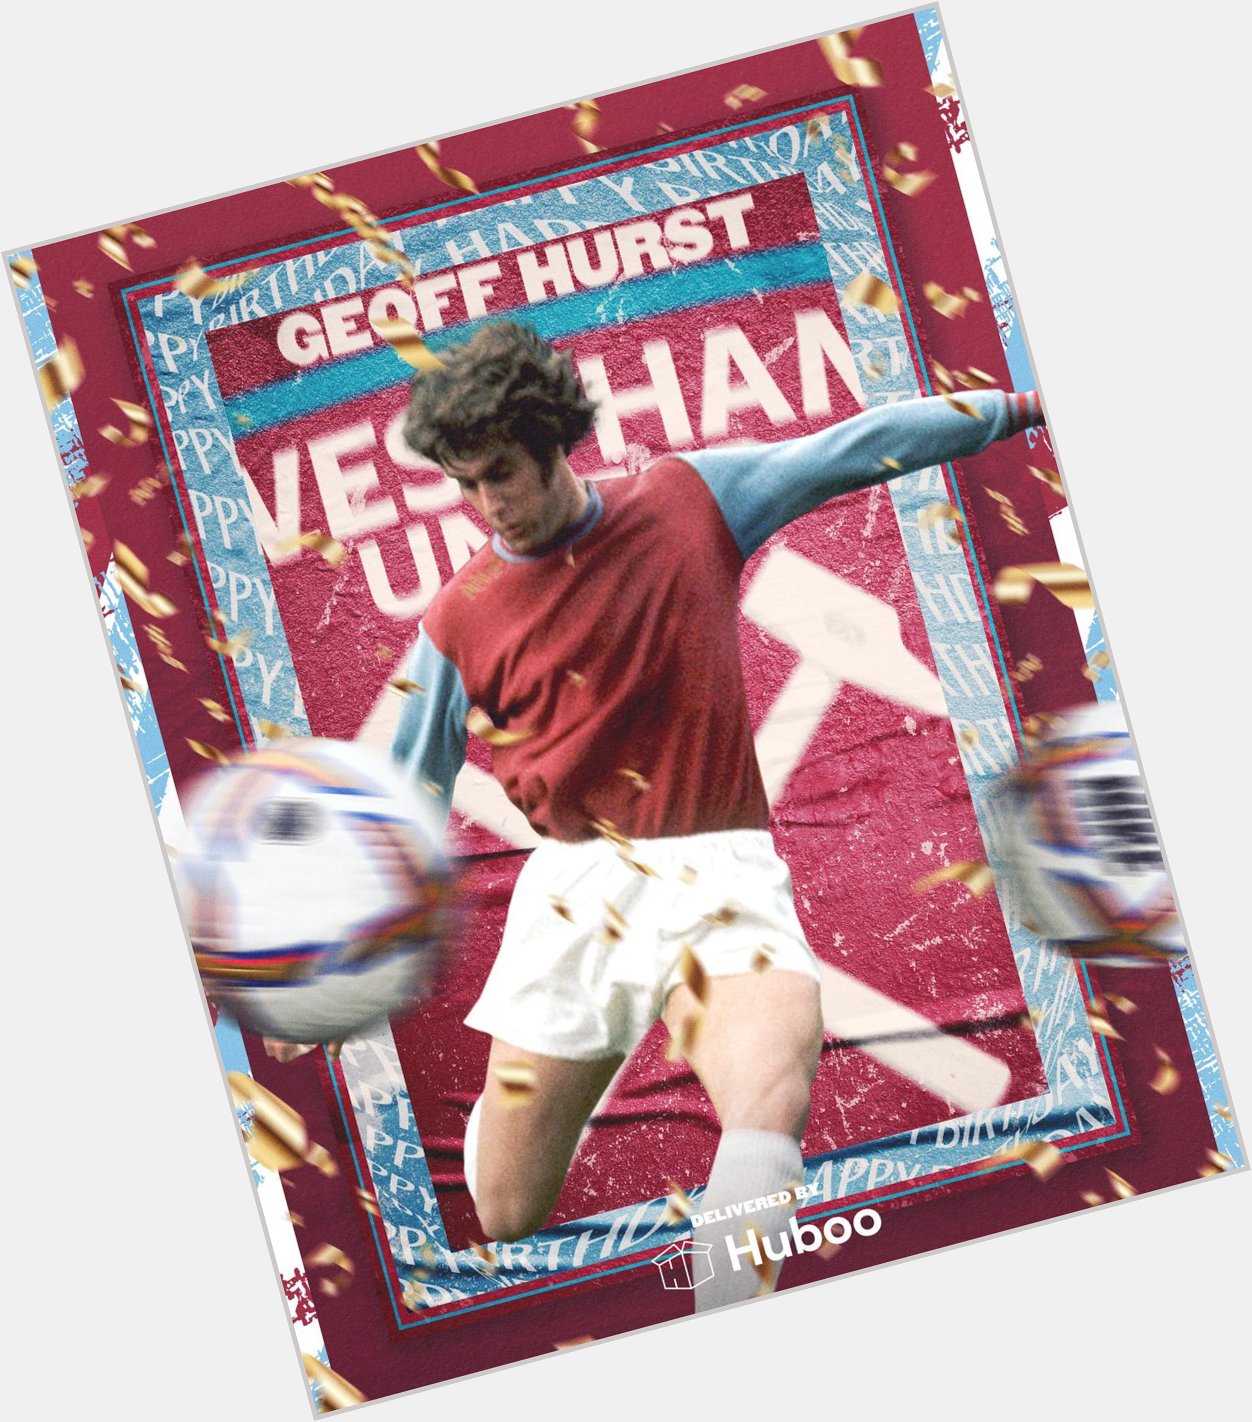 Happy 81st birthday Geoff Hurst!!   A big reason why England won the World Cup in 66. A true West Ham legend  